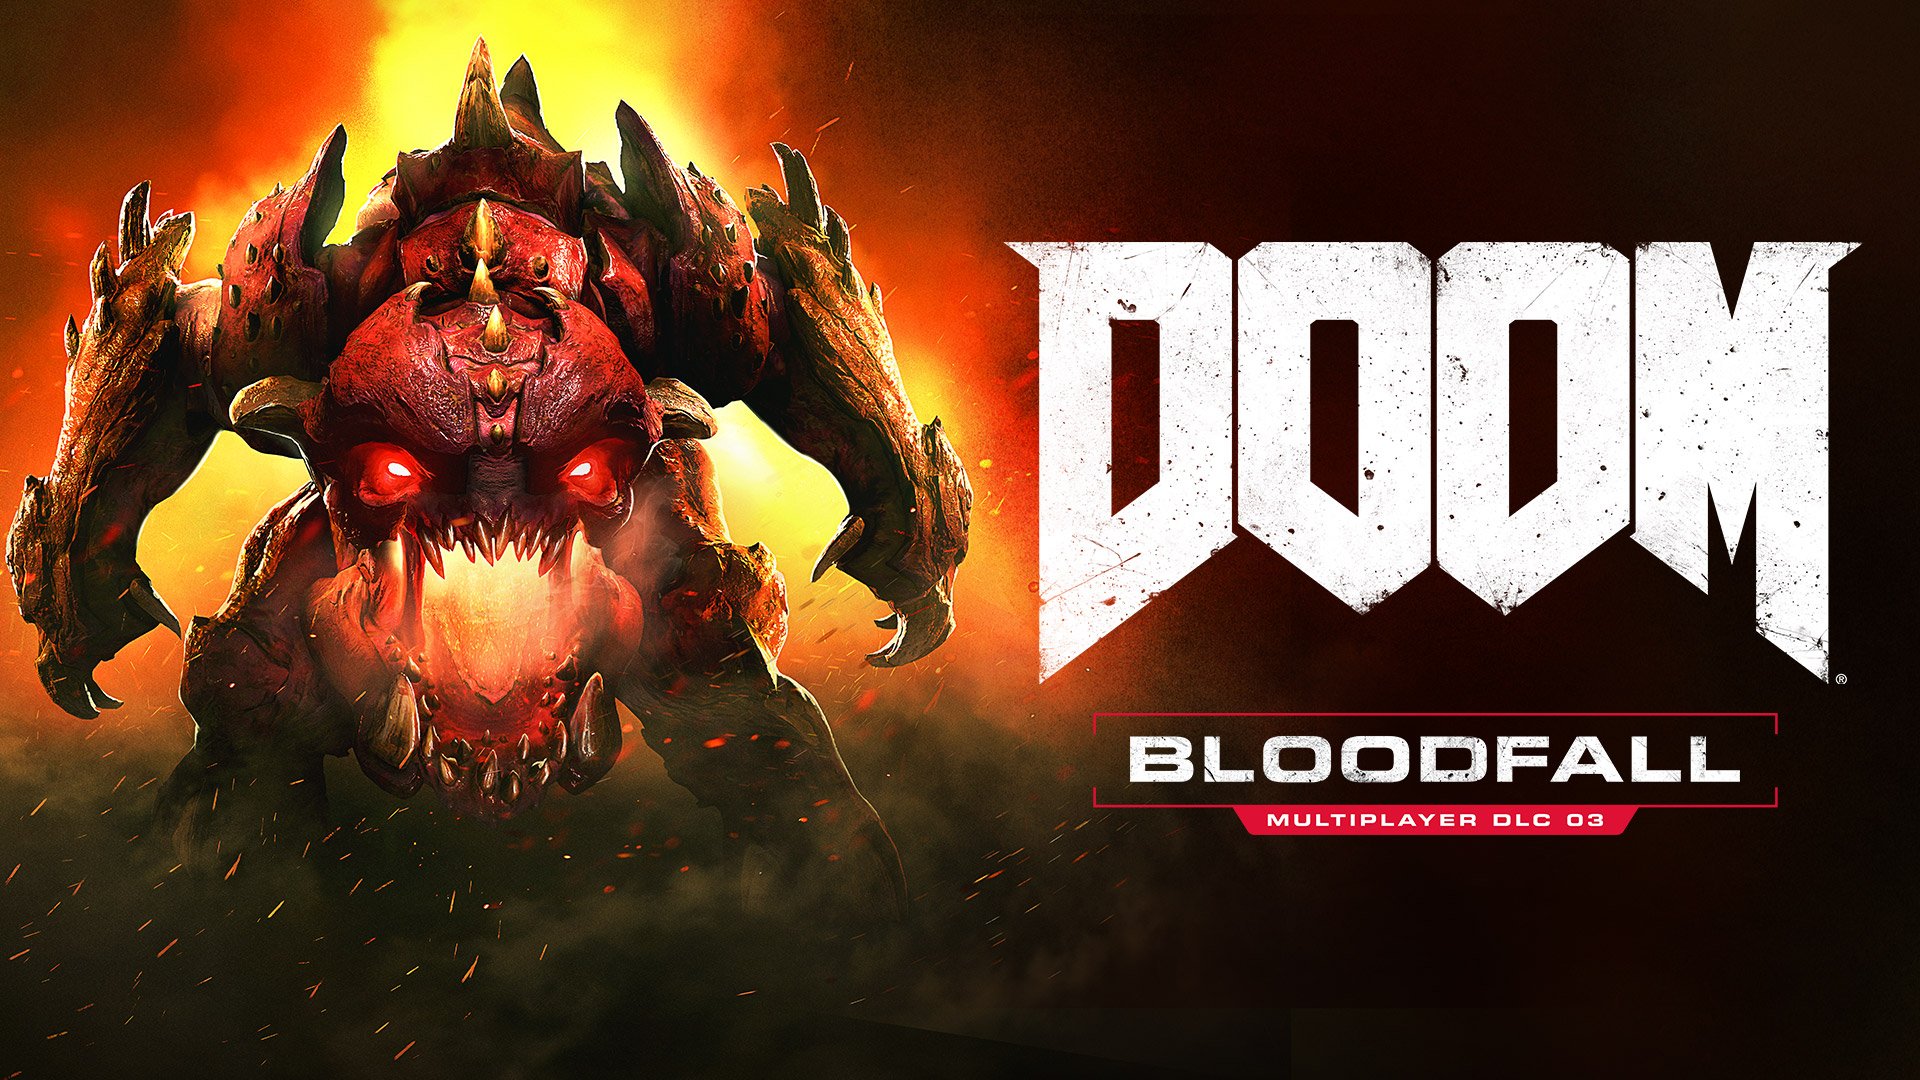 Immagine pubblicata in relazione al seguente contenuto: Bethesda presenta Bloodfall, il terzo e ultimo DLC per il game DOOM | Nome immagine: news25446_DOOM-Bloodfall-DLC_1.jpg